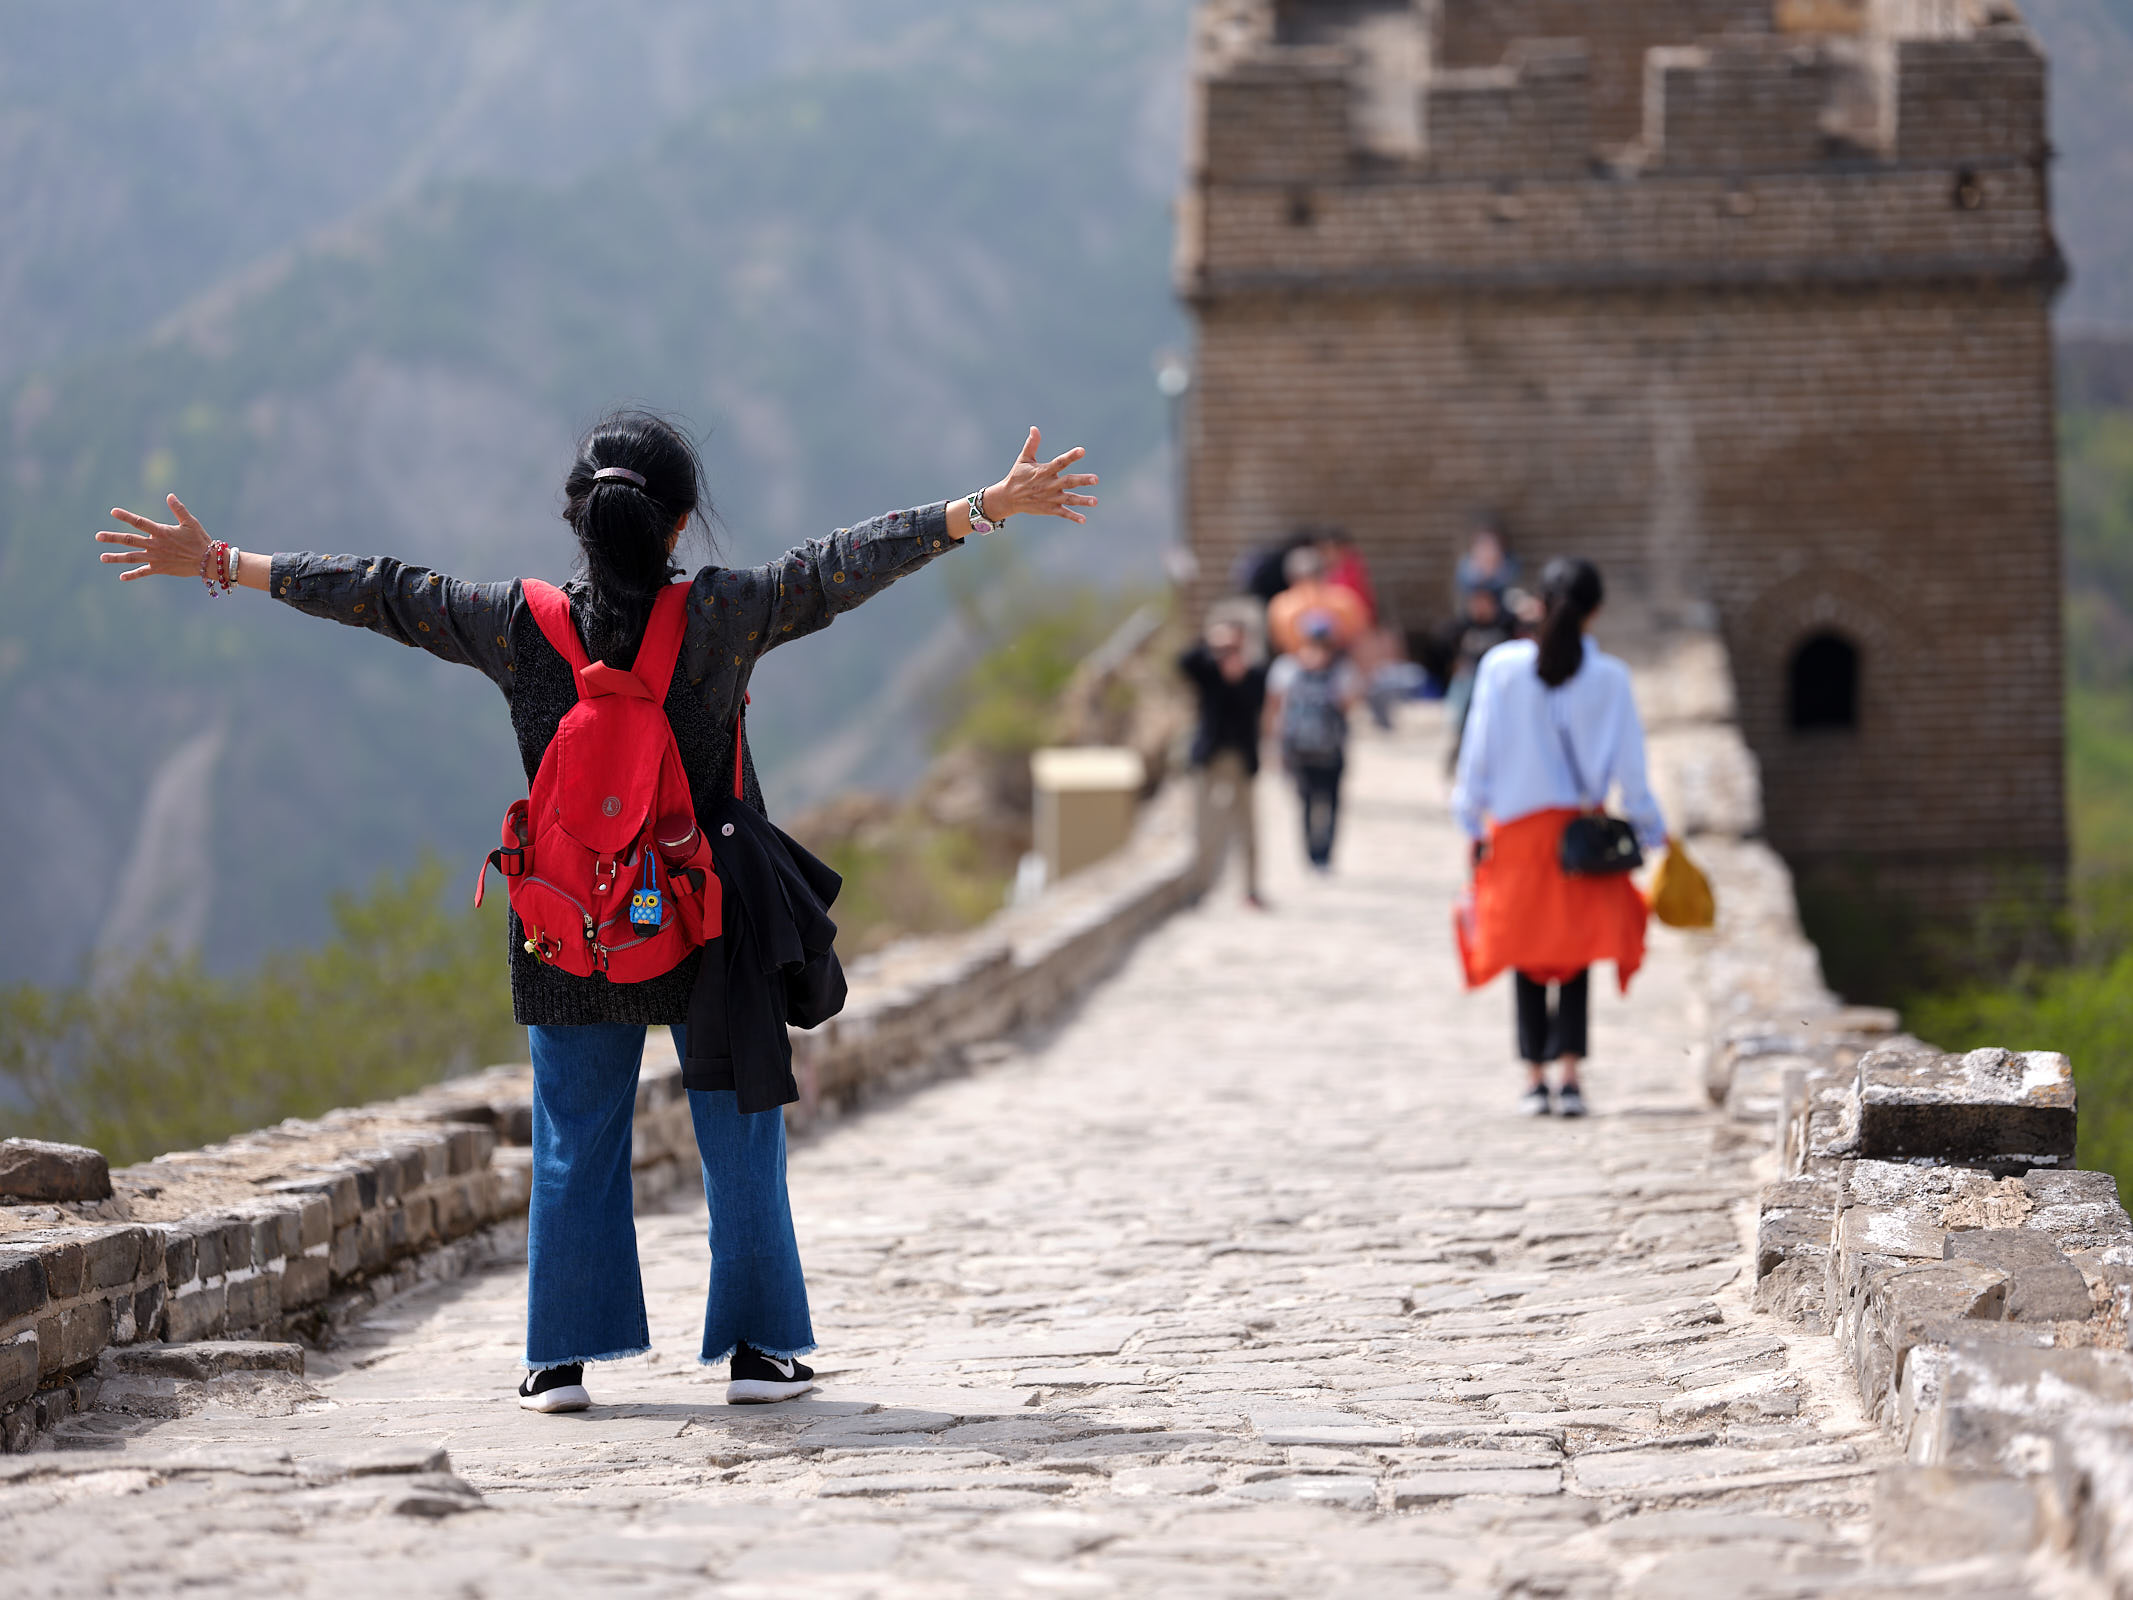 Simatai Great Wall of China